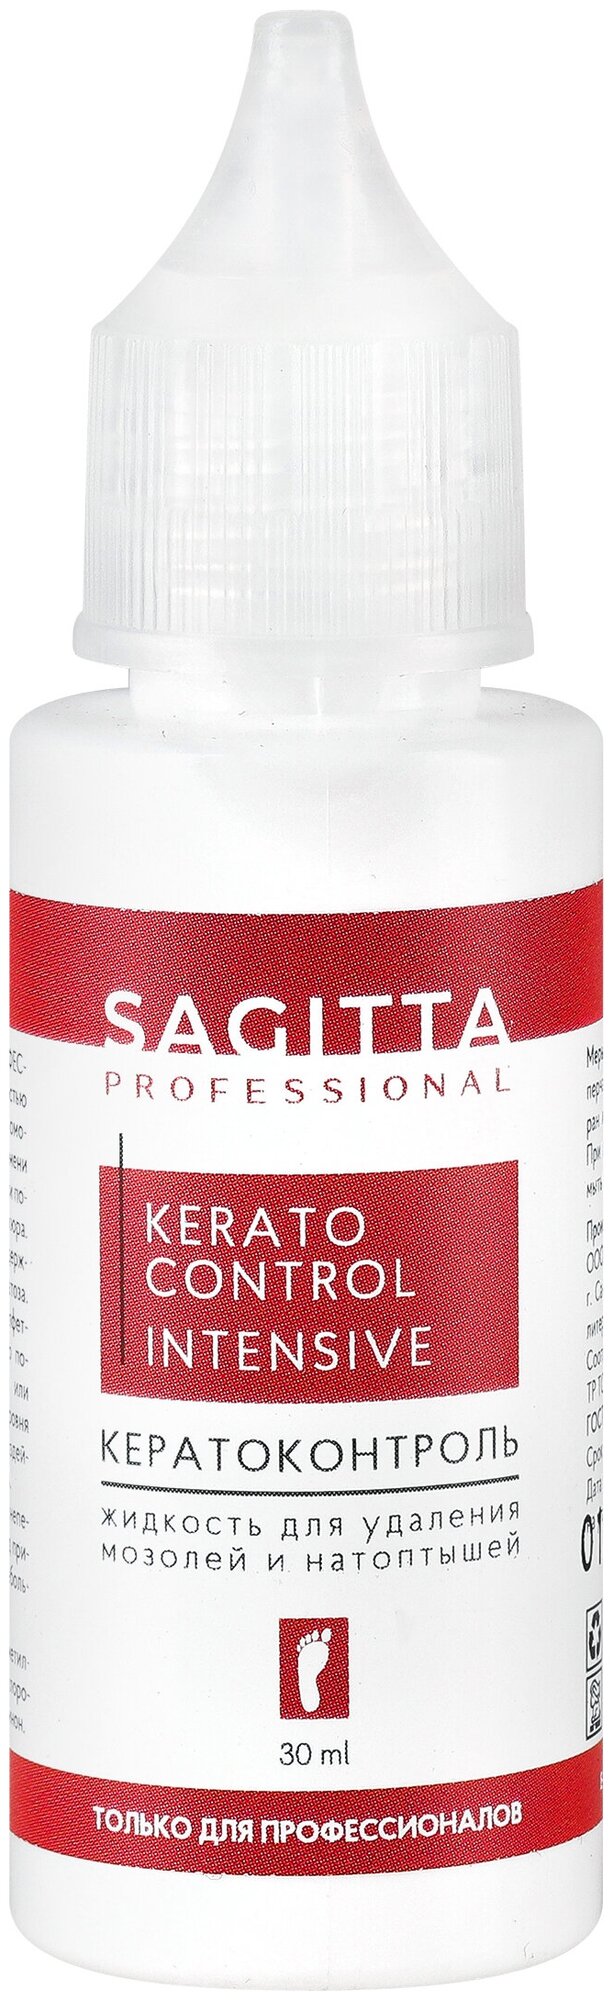 SAGITTA, KERATO CONTROL INTENSIVE - кератоконтроль жидкость для удаления мозолей и натоптышей 30ml